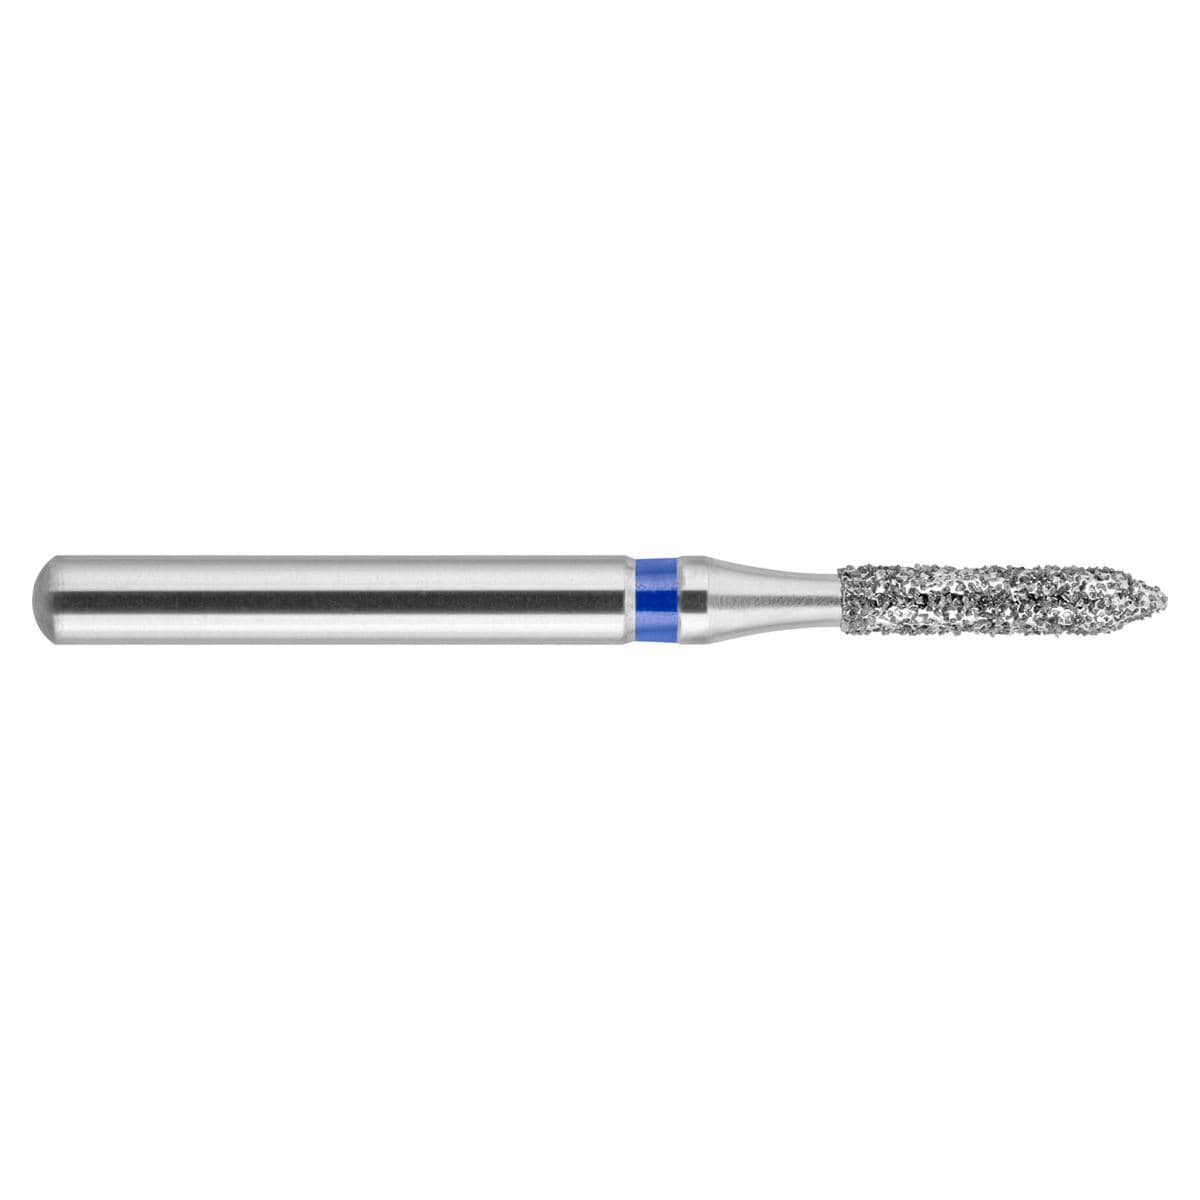 NeoDiamond FG, Form 129, Zylinder spitz - ISO 012, mittel (blau), Packung 10 Stück